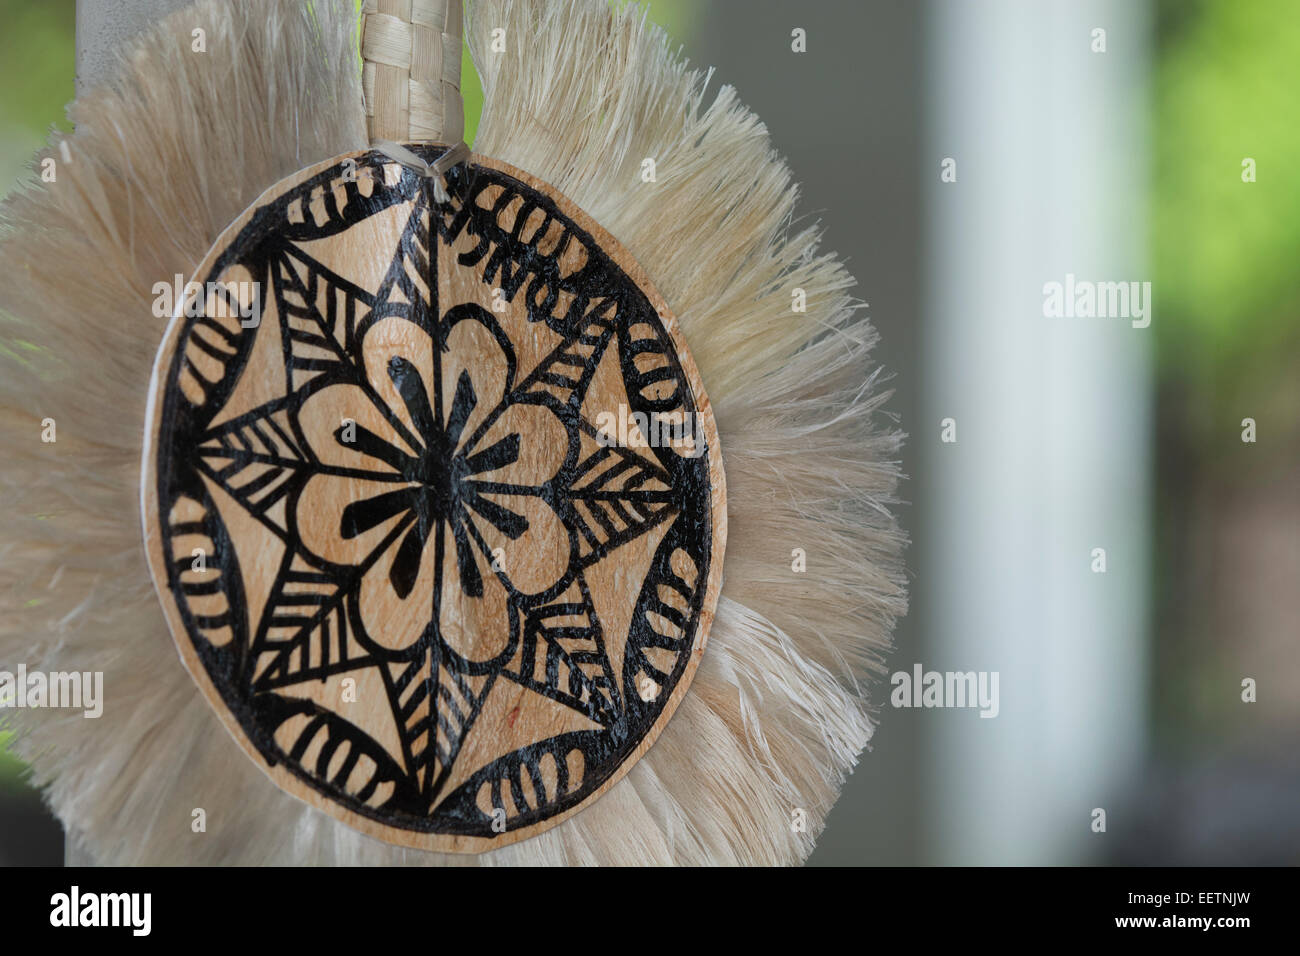 Royaume de Tonga, les îles Vava'u, Neiafu. Tissu tapa peint à la main artisanat souvenirs ventilateur. Banque D'Images